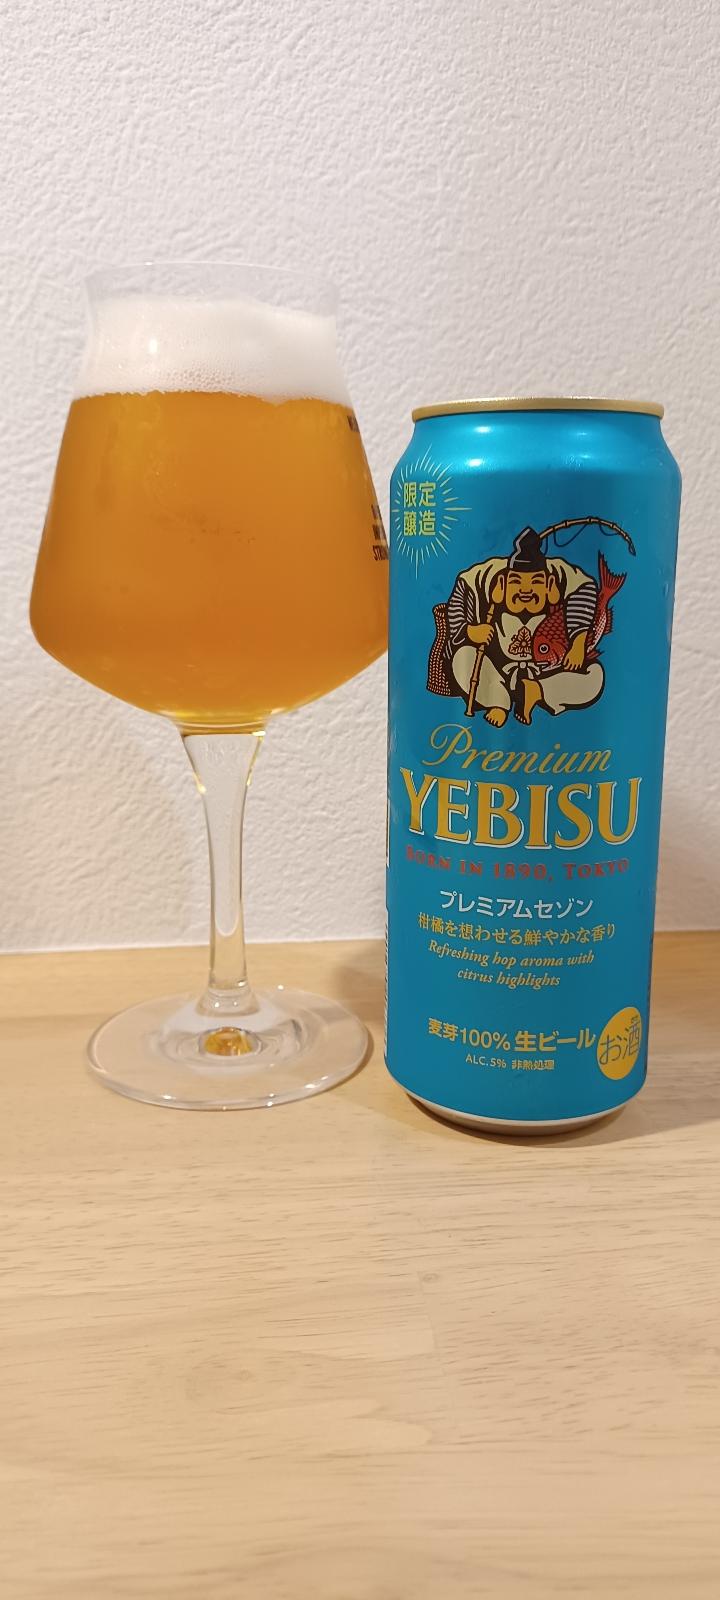 Yebisu Premium Saison (2022)